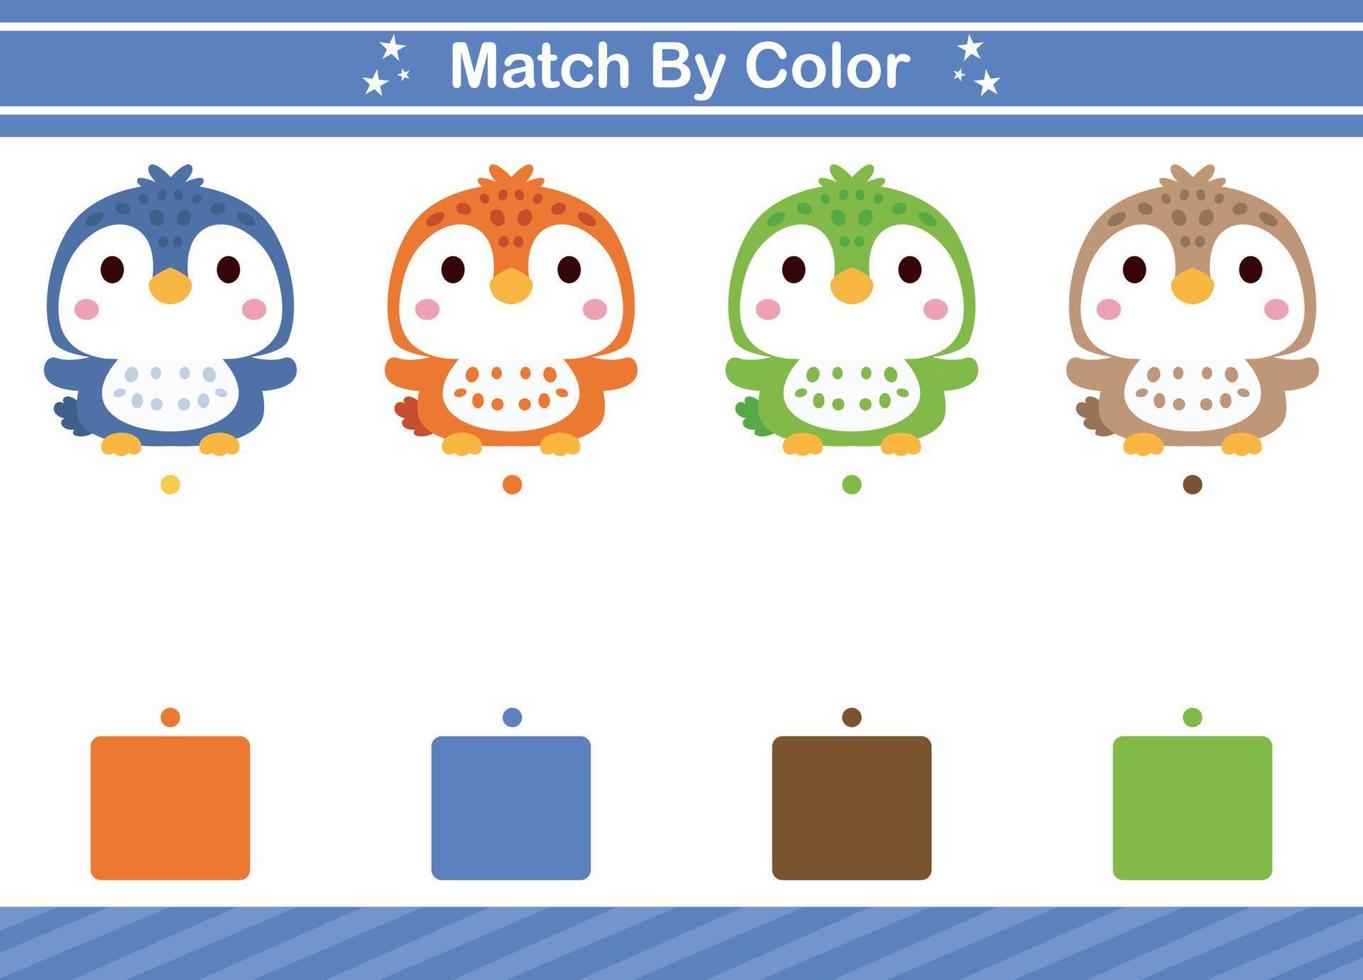 bij elkaar passen door kleur van dier leerzaam spel voor kleuterschool bij elkaar passen spel voor kinderen vector